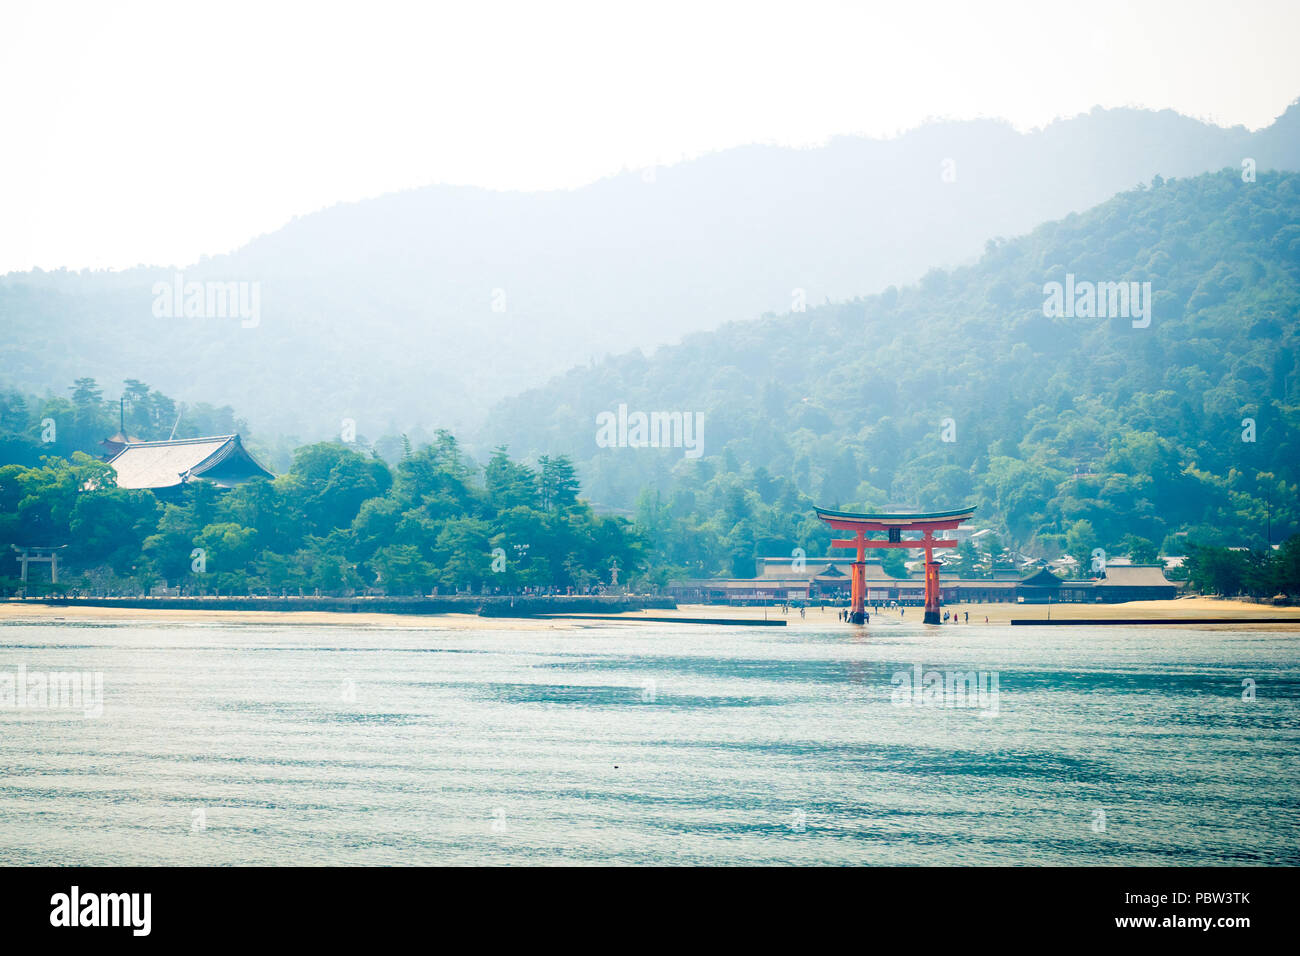 The famous floating torii gate of Itsukushima Shrine (Itsukushima-jinja) on the island of Miyajima (Itsukushima) in Hiroshima Prefecture, Japan. Stock Photo